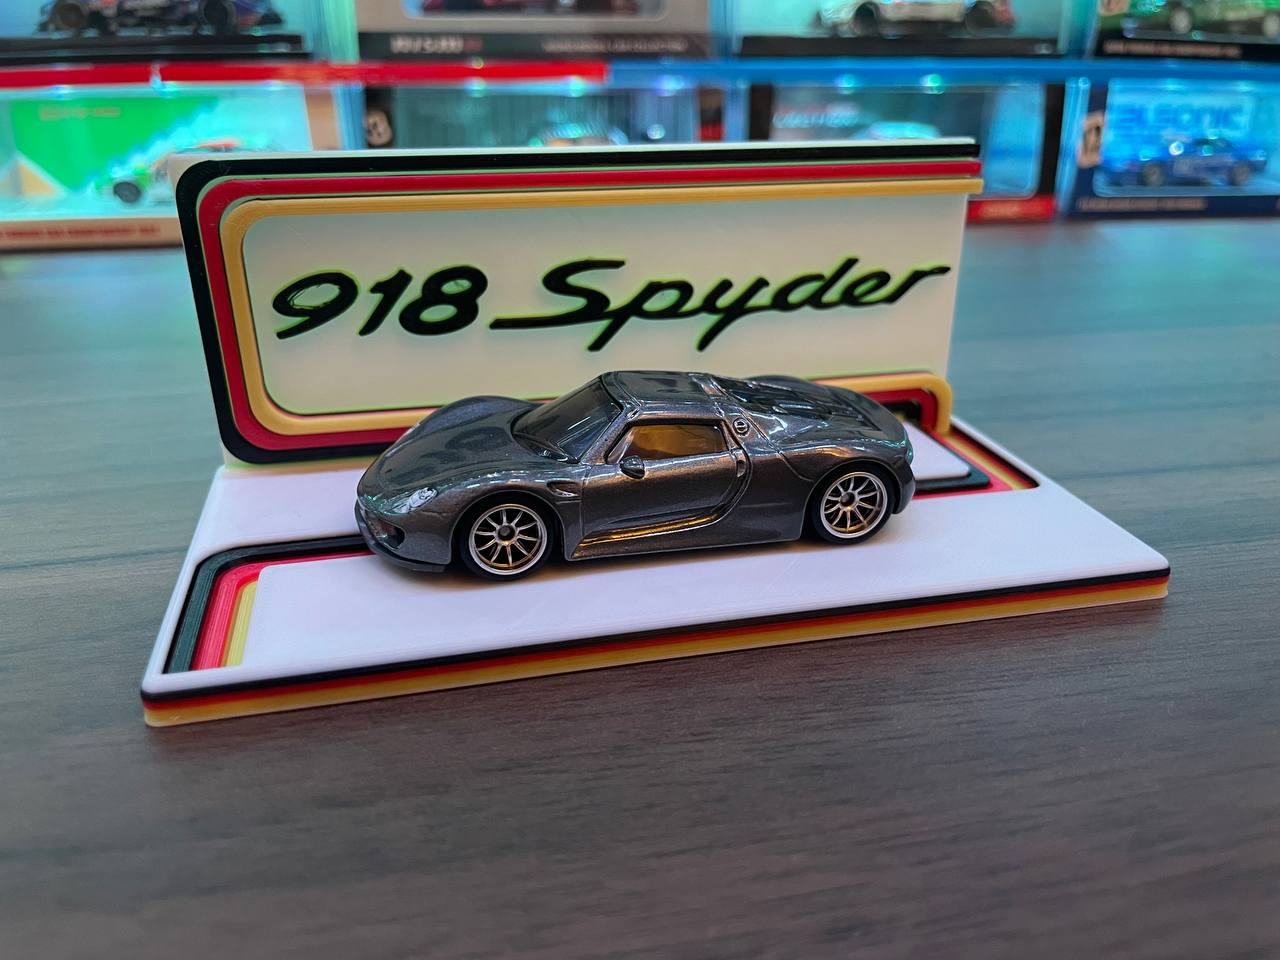 Matchbox Porsche 918 Spyder Display